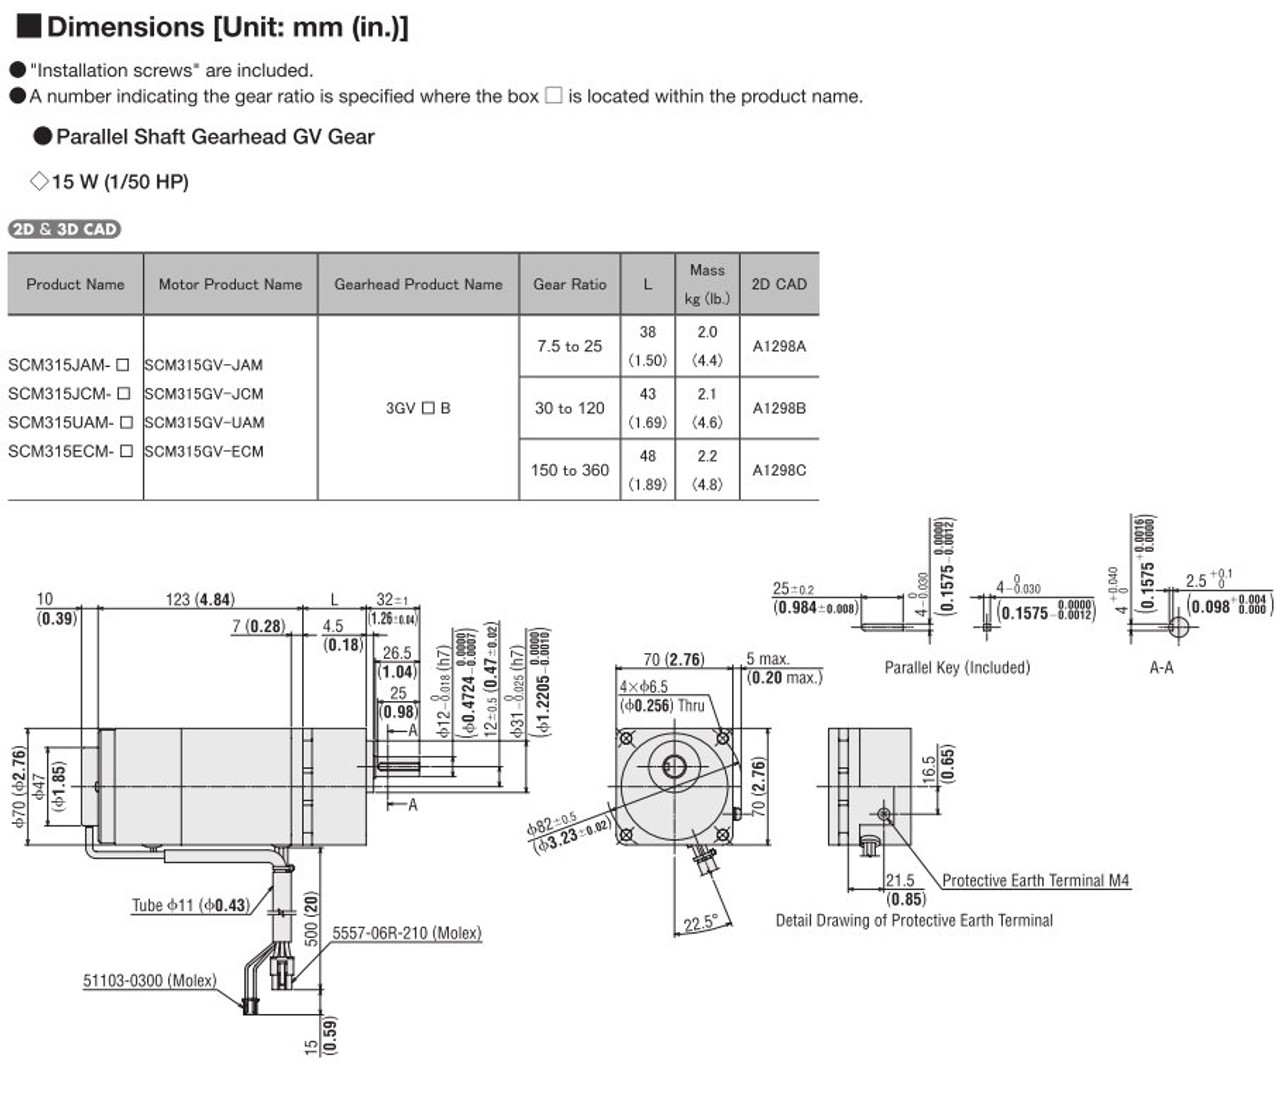 SCM315UAM-18 / DSCD15UAM - Dimensions